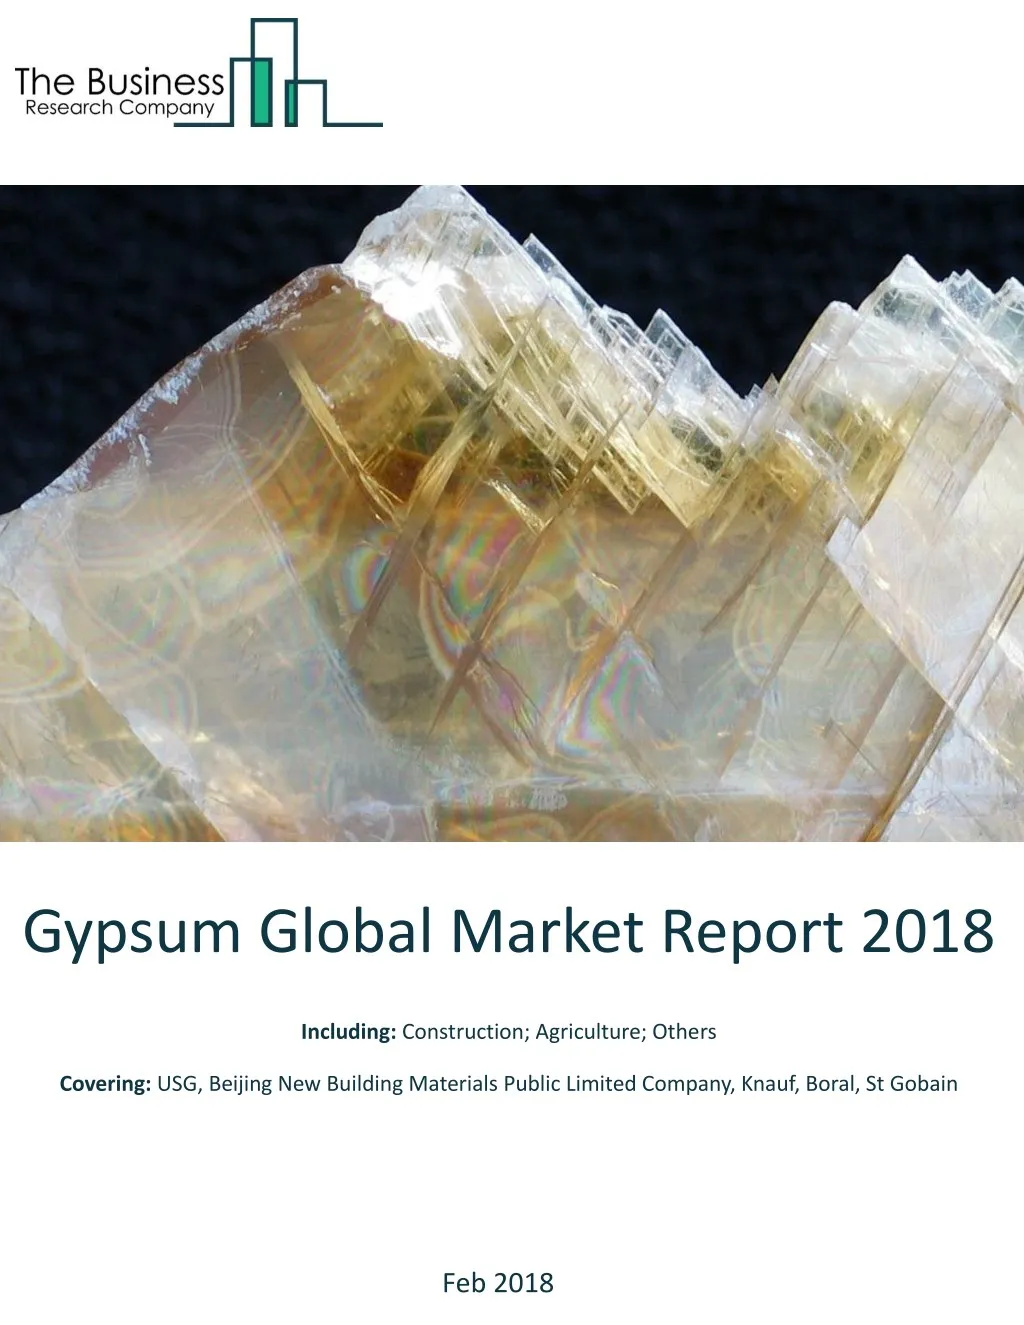 gypsum global market report 2018